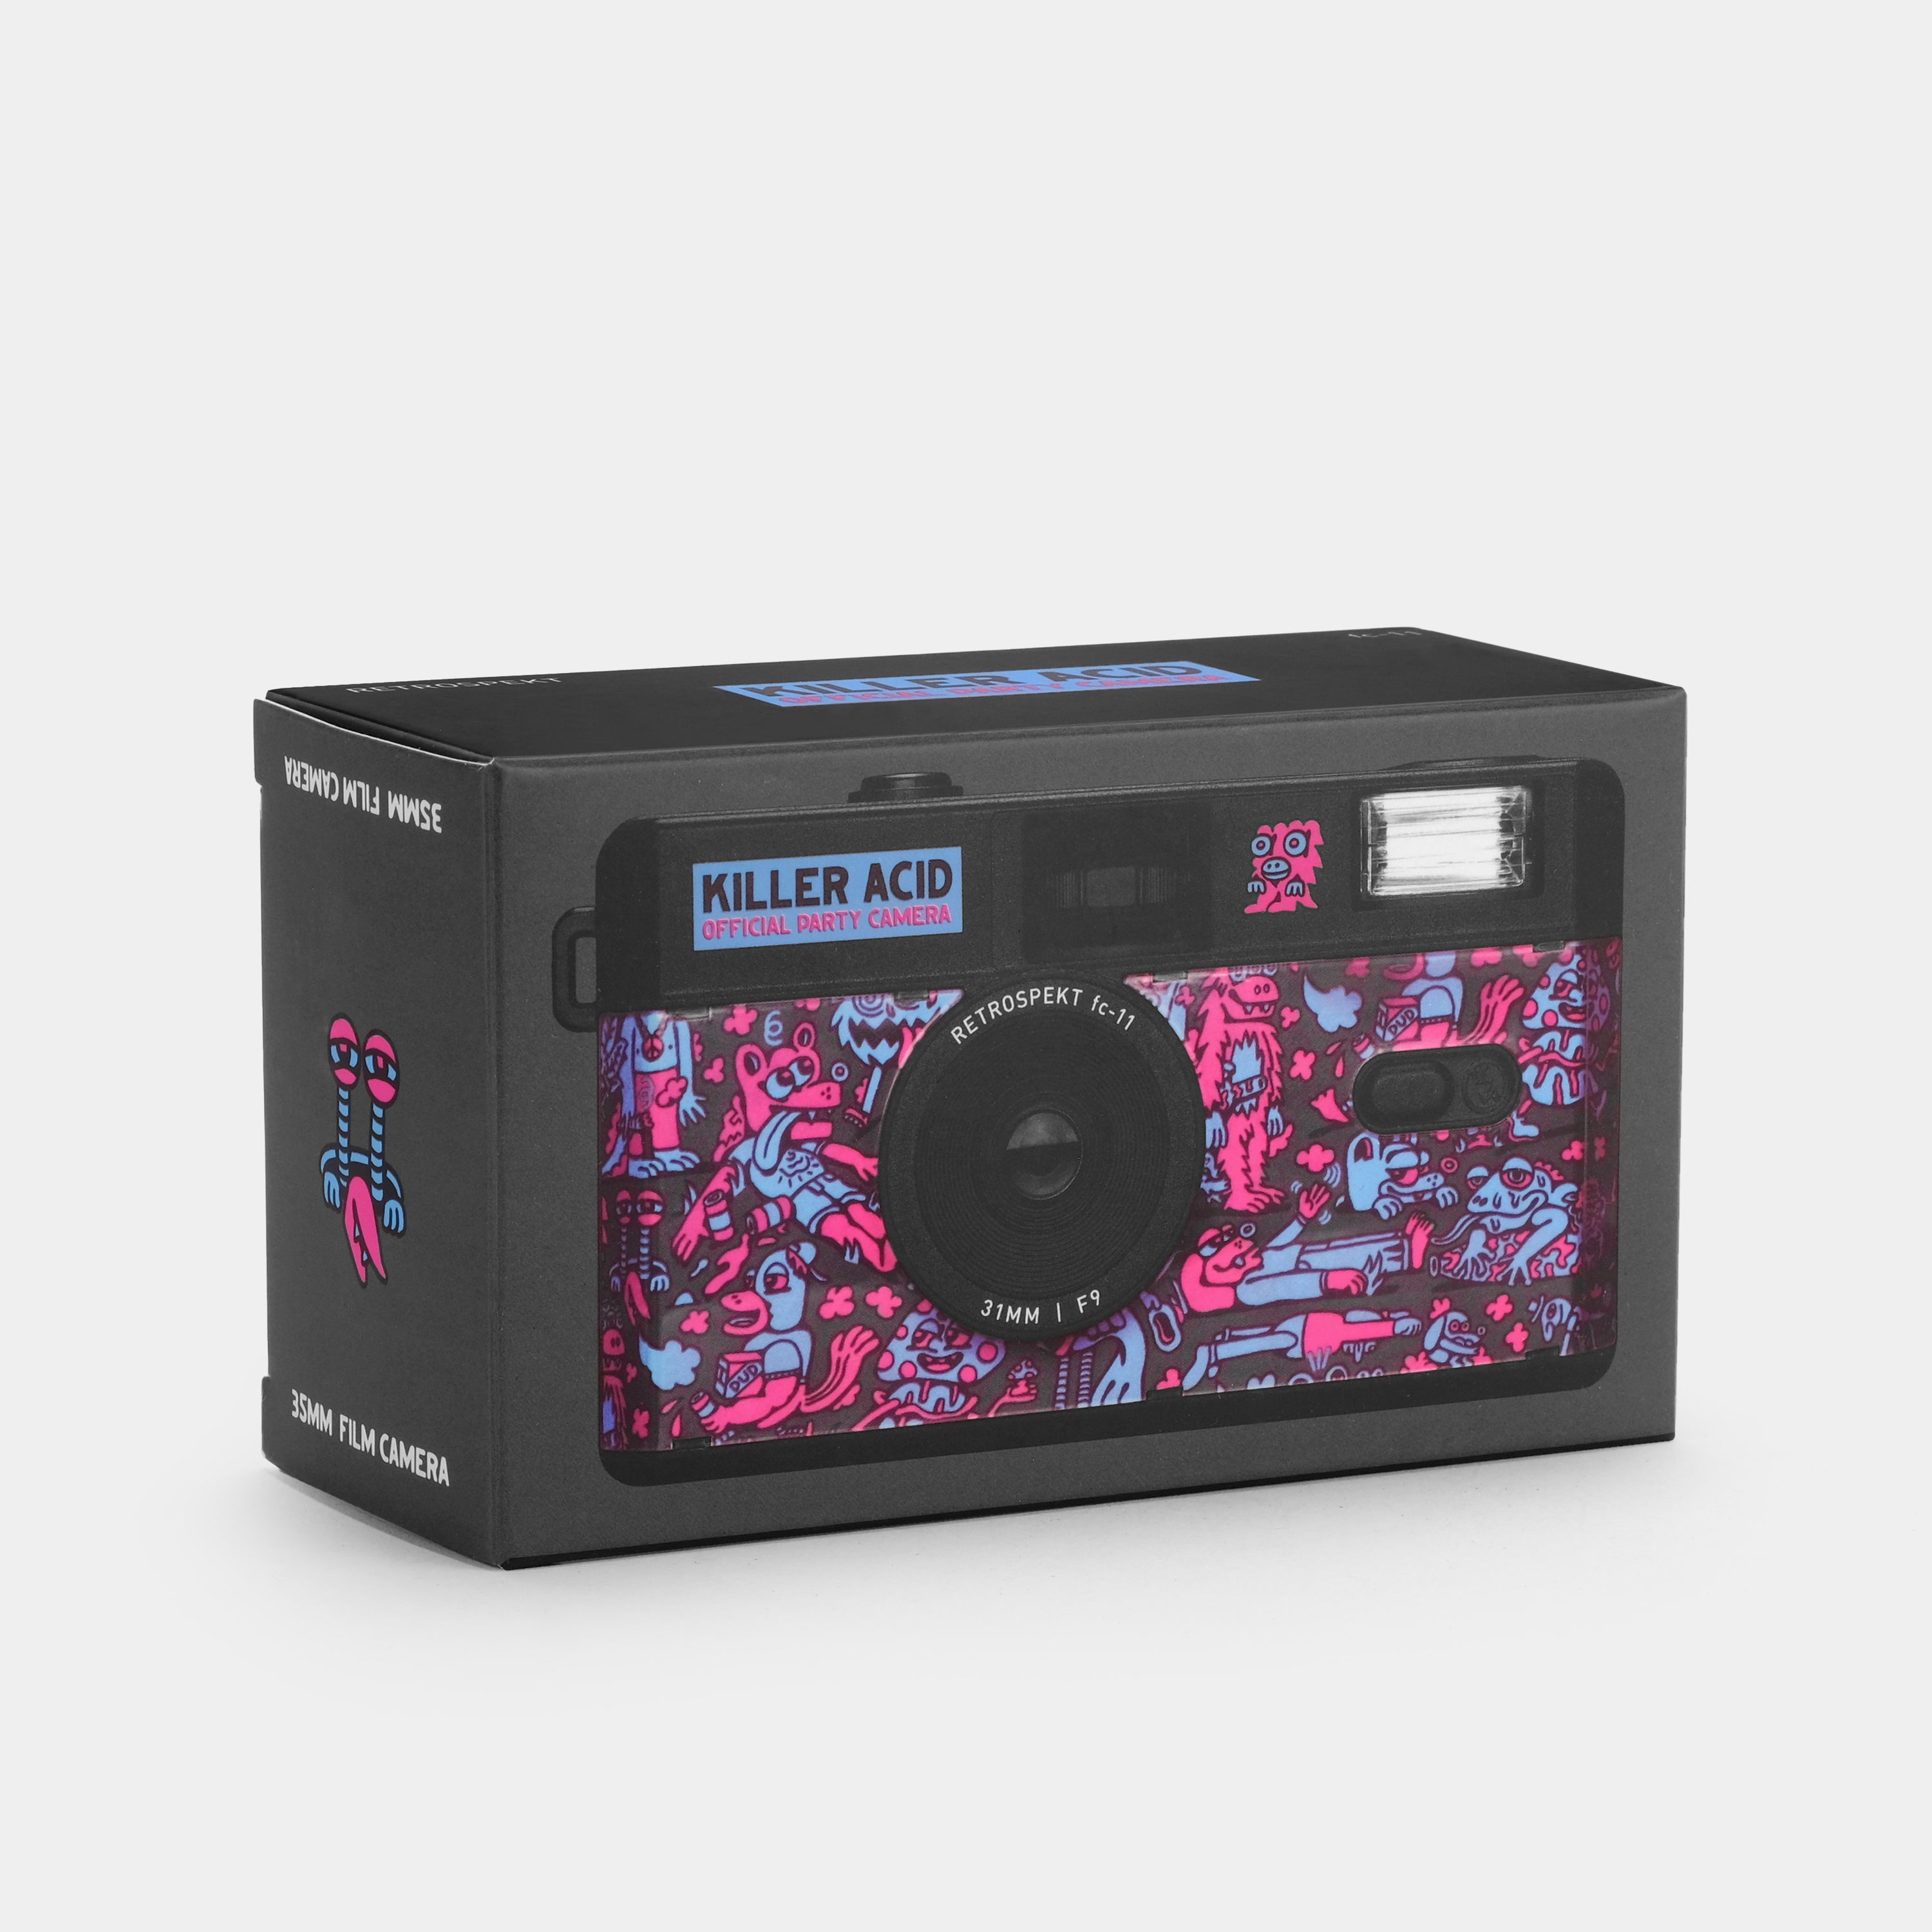 Killer Acid “Official Party Camera” FC-11 35mm Film Camera